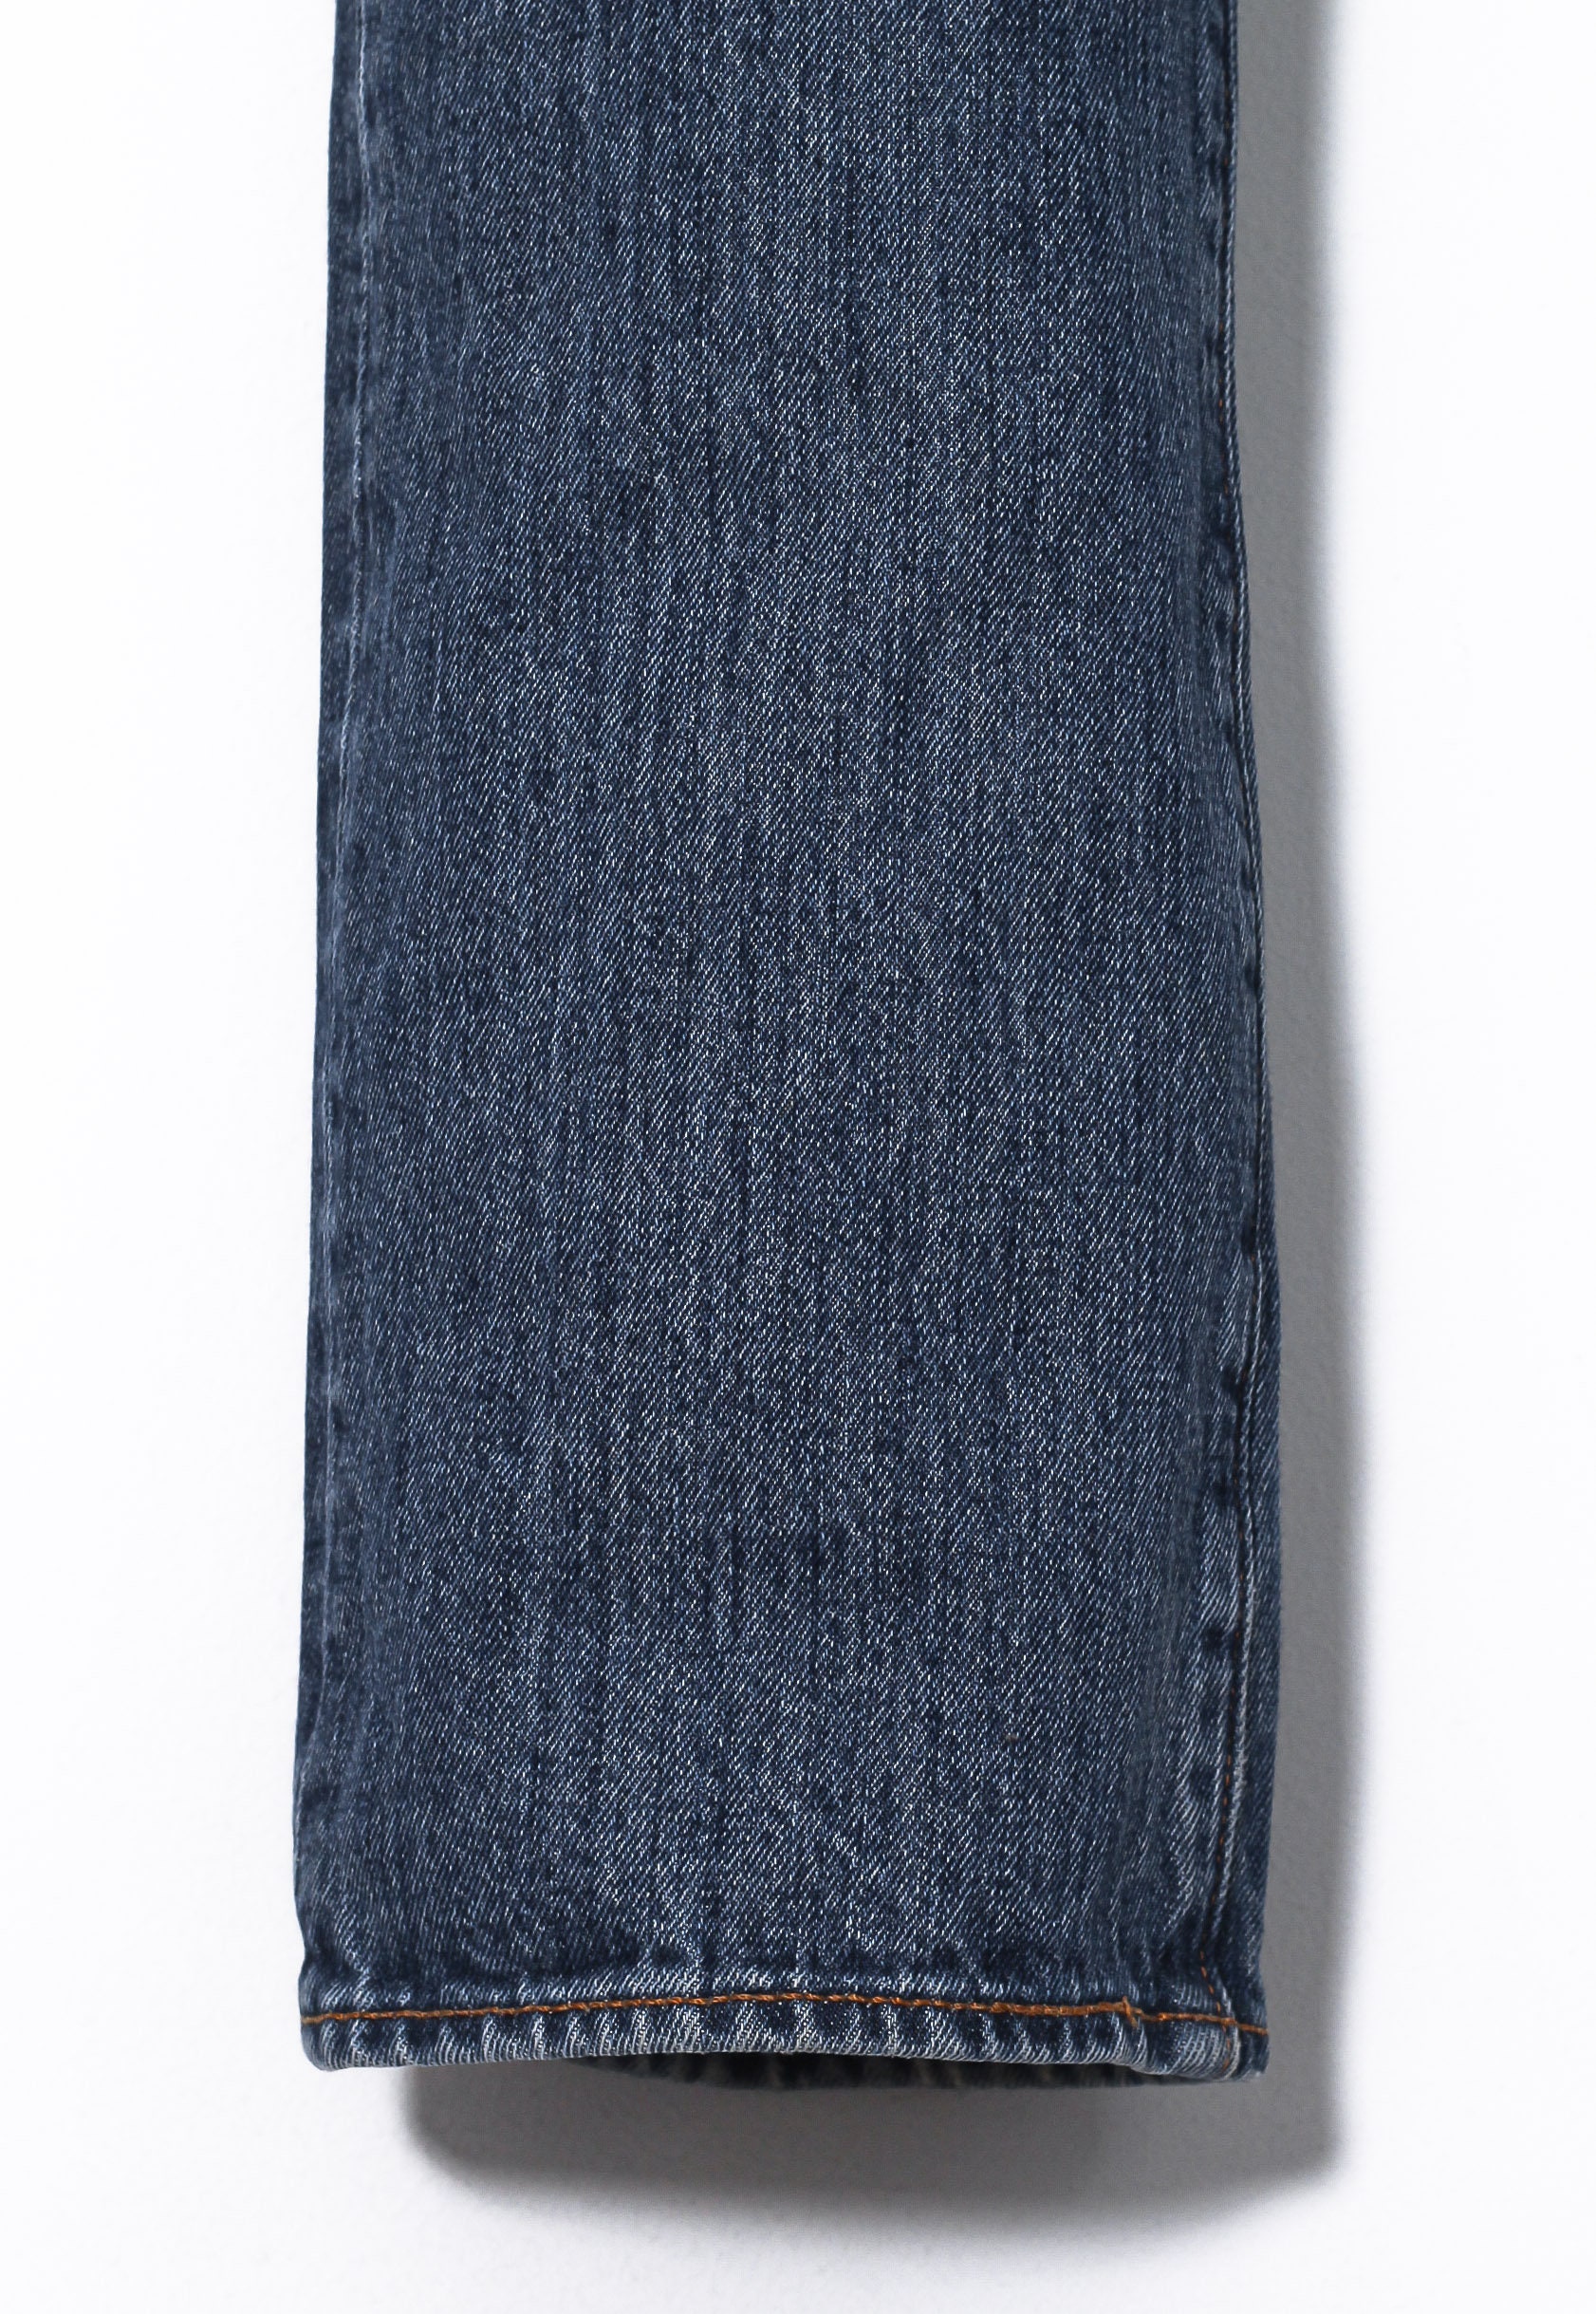 Vintage Mens LEVIS 501 Jeans Denim Pants Trousers Blue Size | Etsy